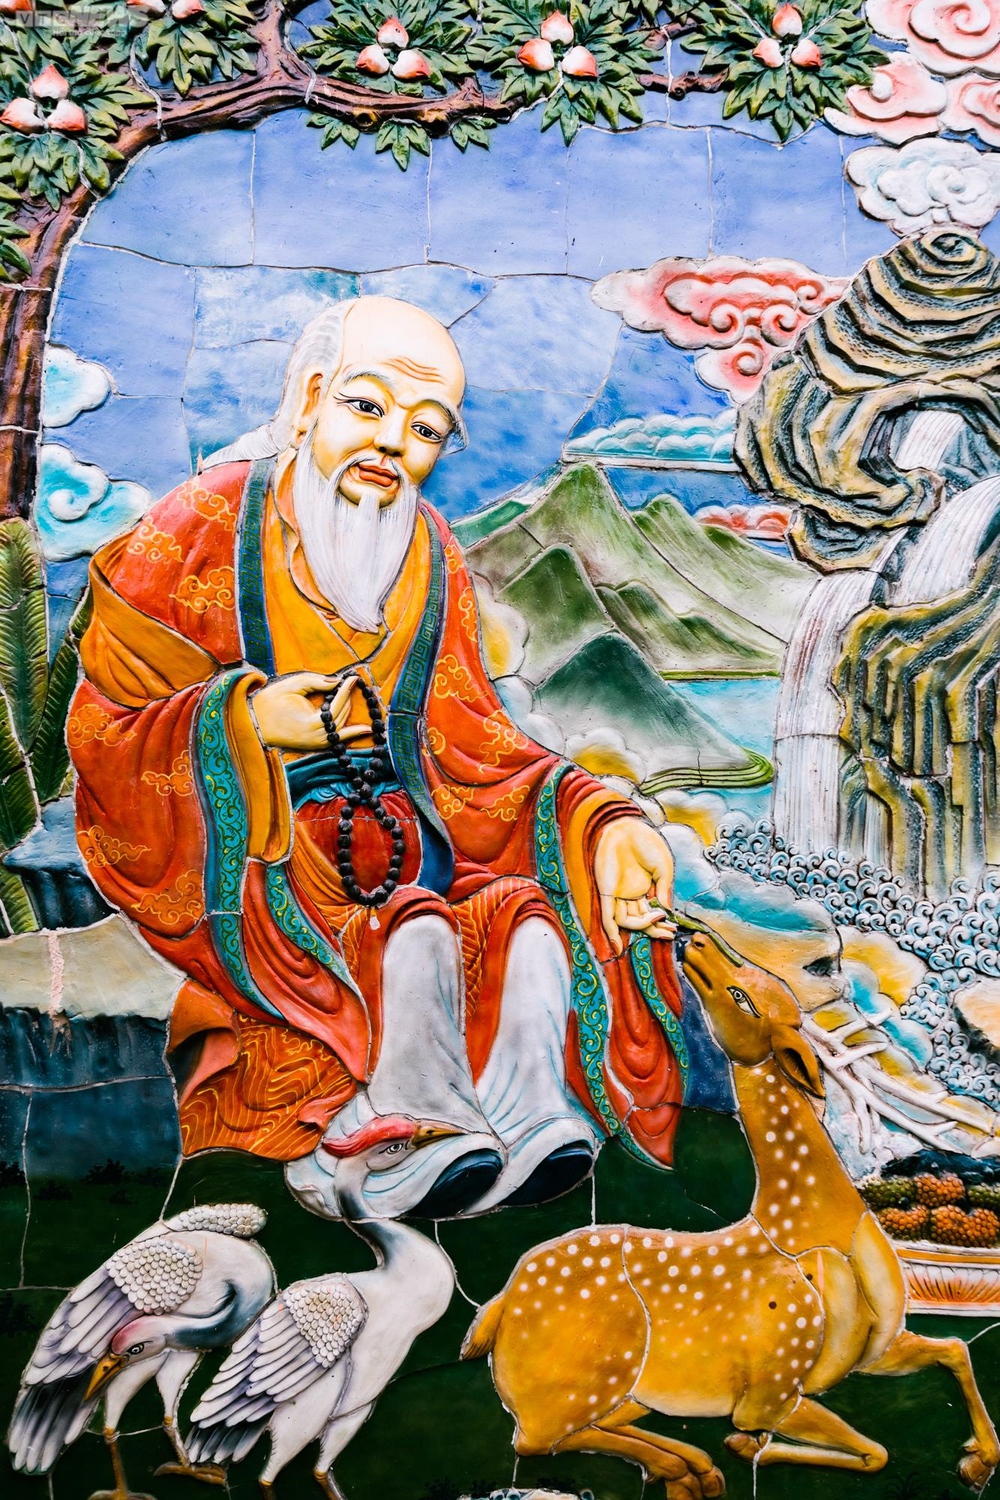 Chiêm ngưỡng ngôi chùa Tây Tạng 600 năm tuổi độc nhất tại Hà Nội - Ảnh 13.